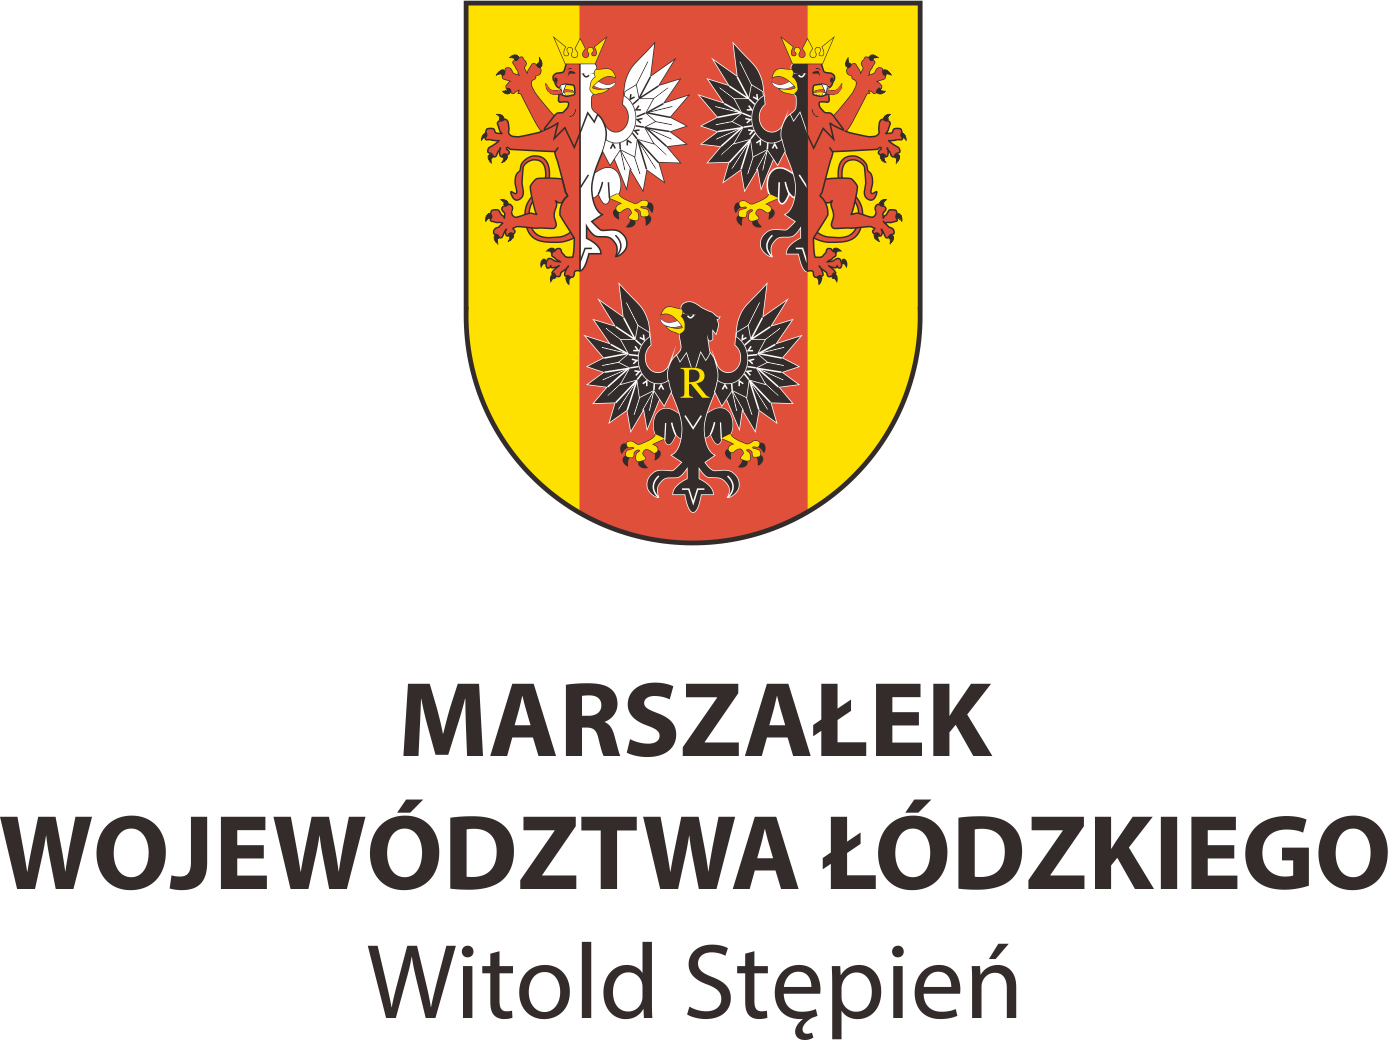 Witold Stępień <br> Marszałek Województwa Łódzkiego